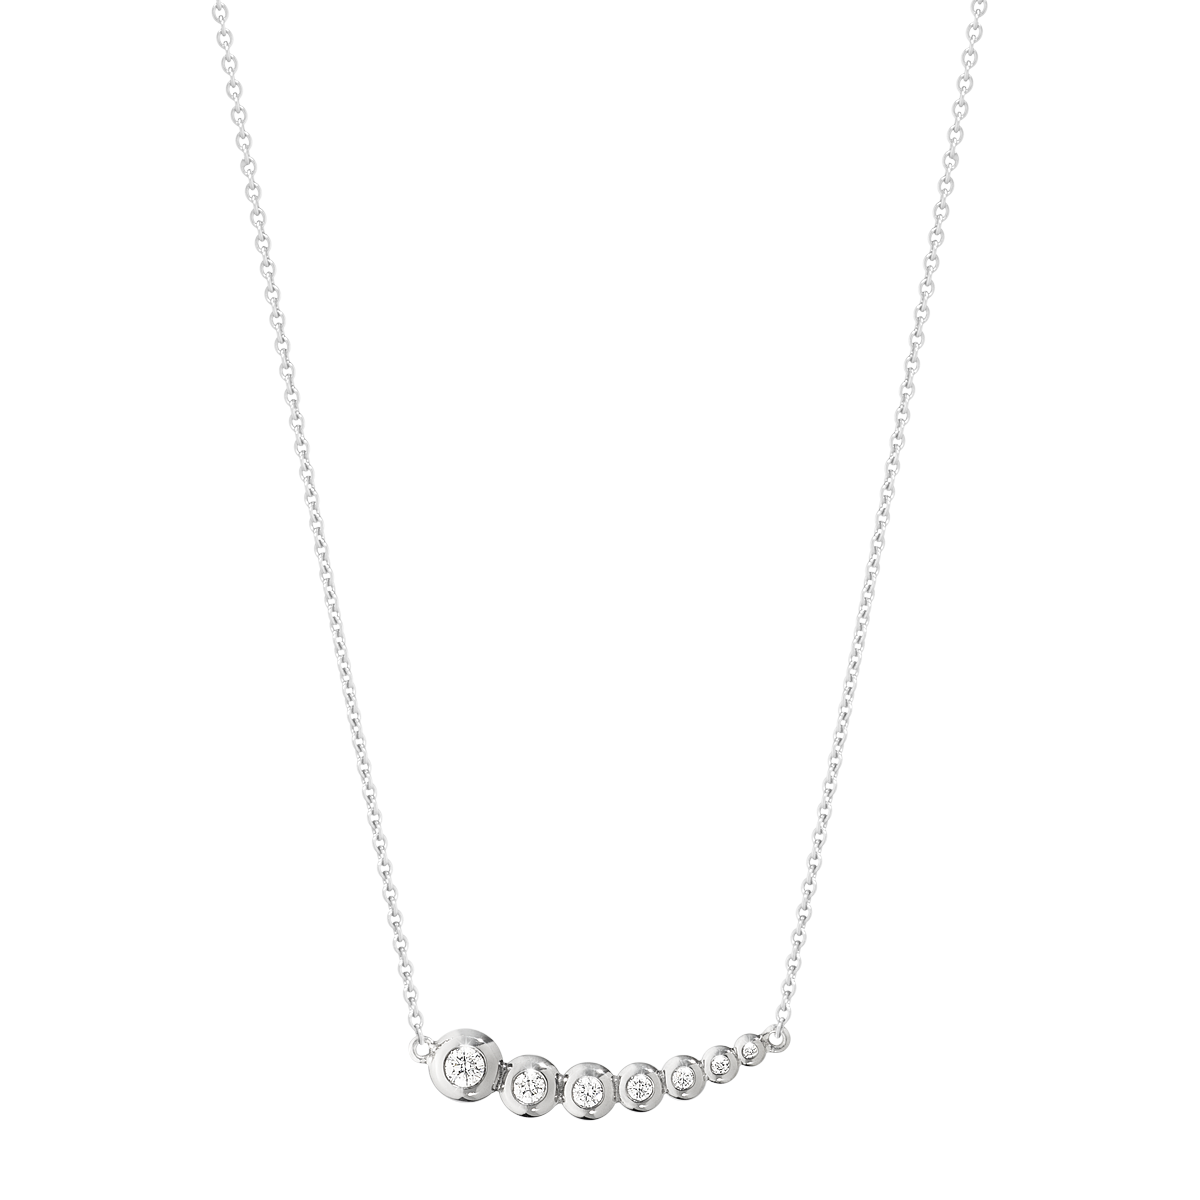 Aurora halskæde med vedhæng diamanter - hvidguld fra Georg Jensen